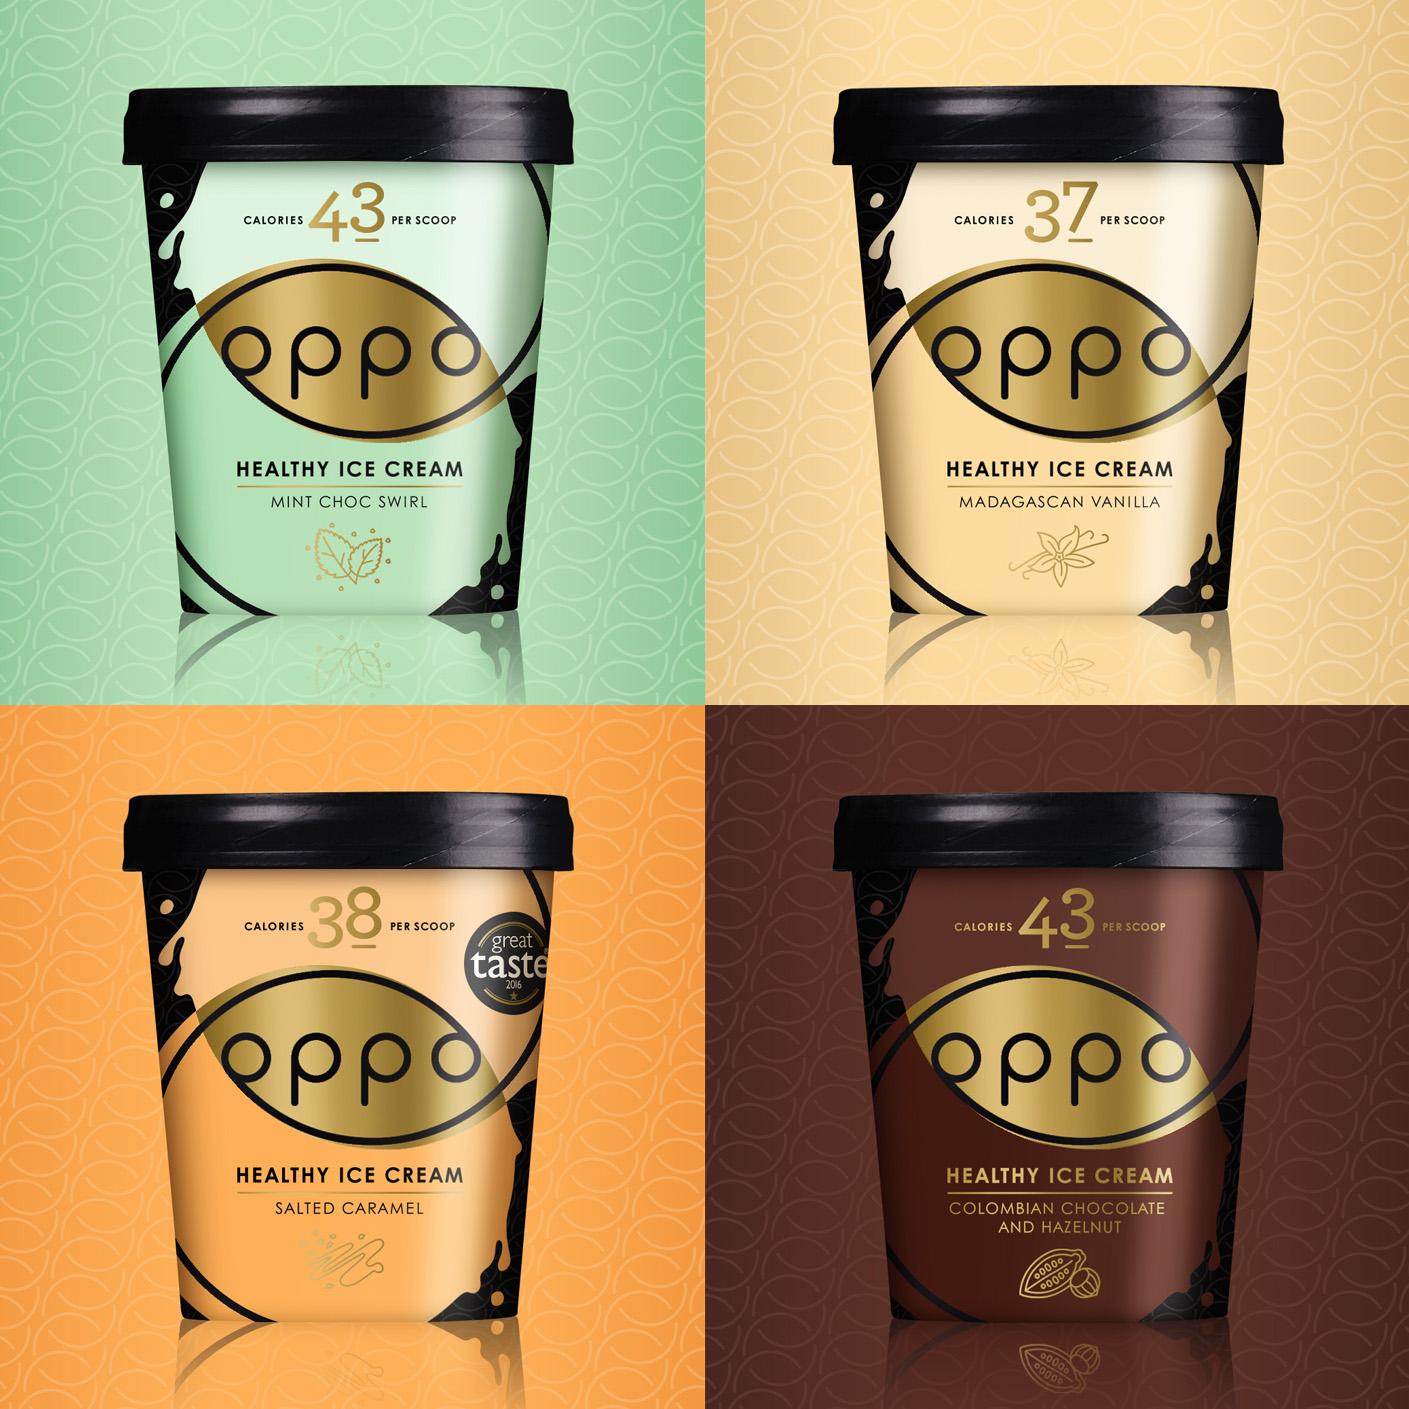 Oppo+ice+cream_full+range.jpg